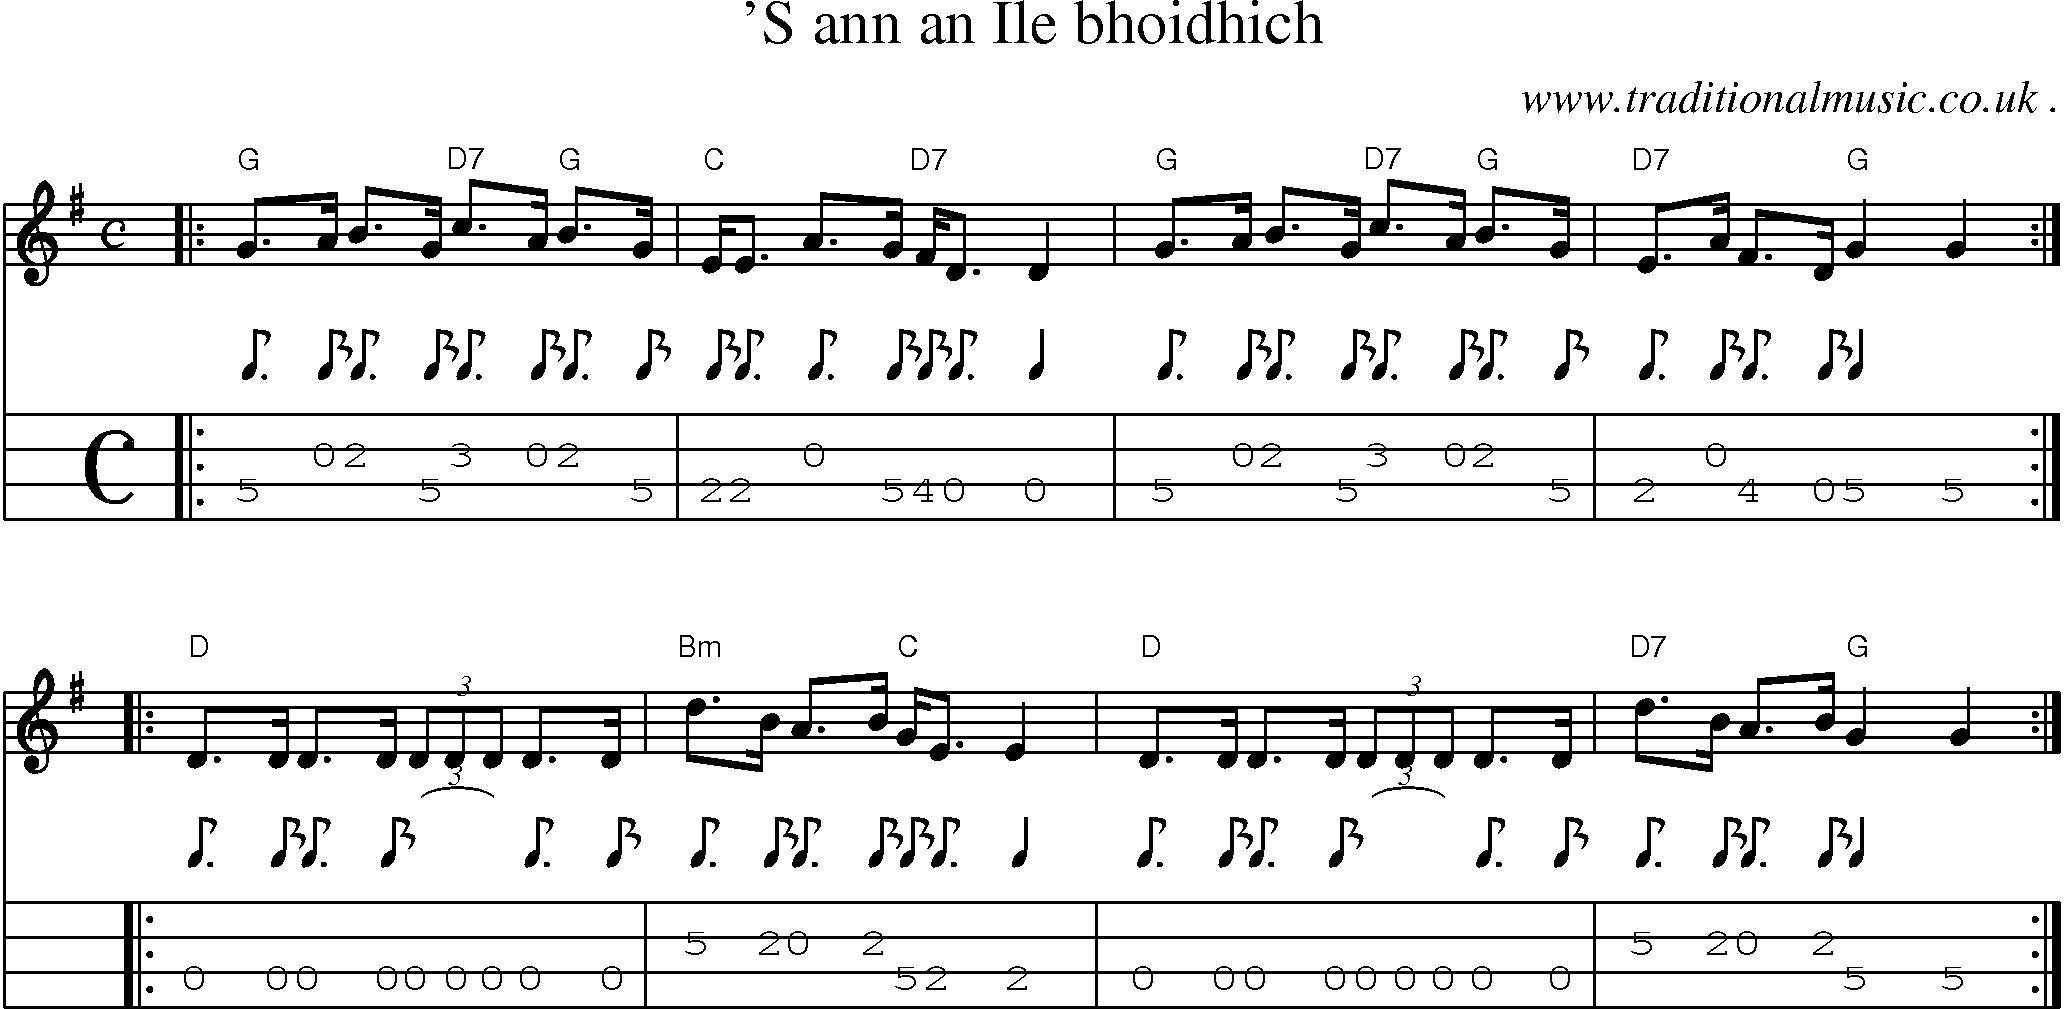 Sheet-music  score, Chords and Mandolin Tabs for S Ann An Ile Bhoidhich